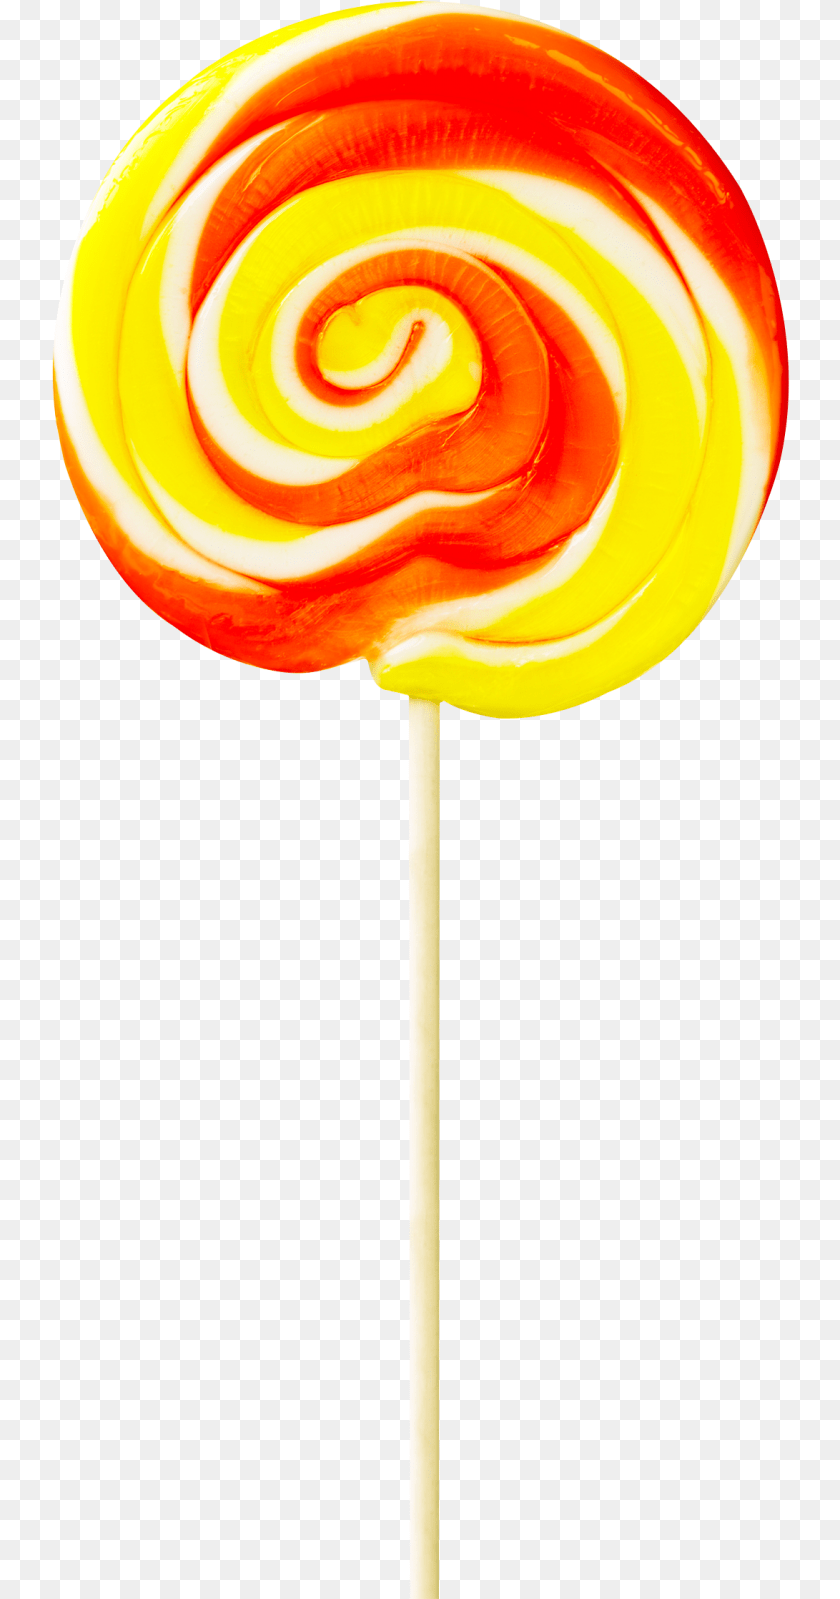 739x1599 Lollipop Image Permen Lollipop, Candy, Food, Sweets, Lamp PNG